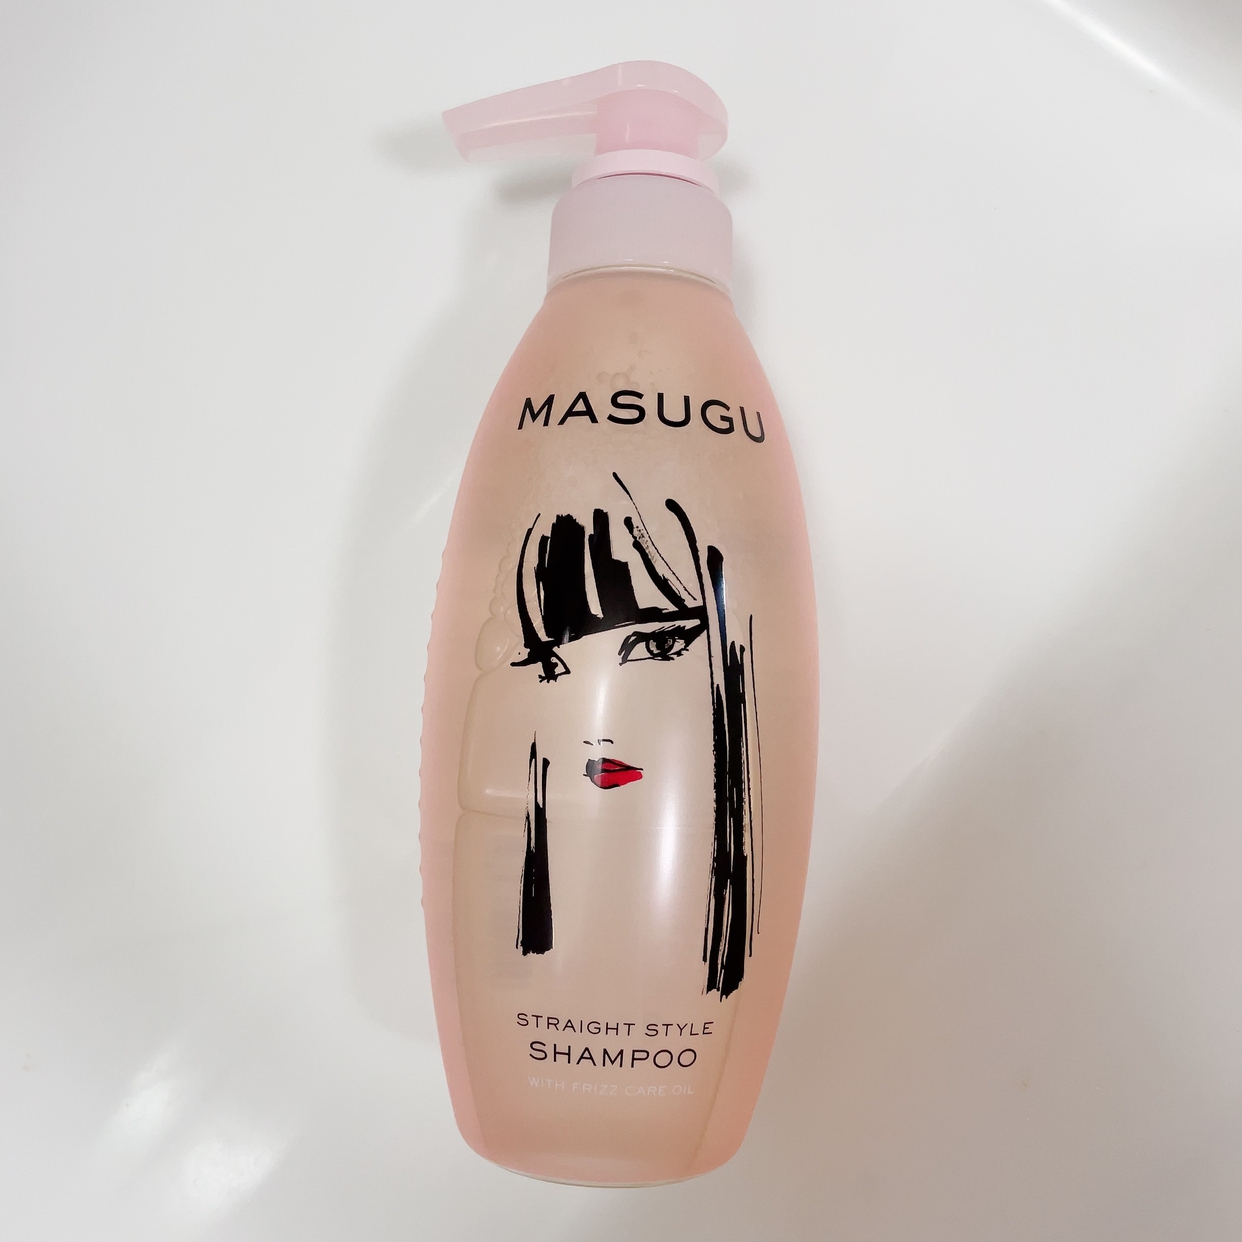 masugu(マッスグ) シャンプーを使ったりなぴょん♡さんのクチコミ画像1